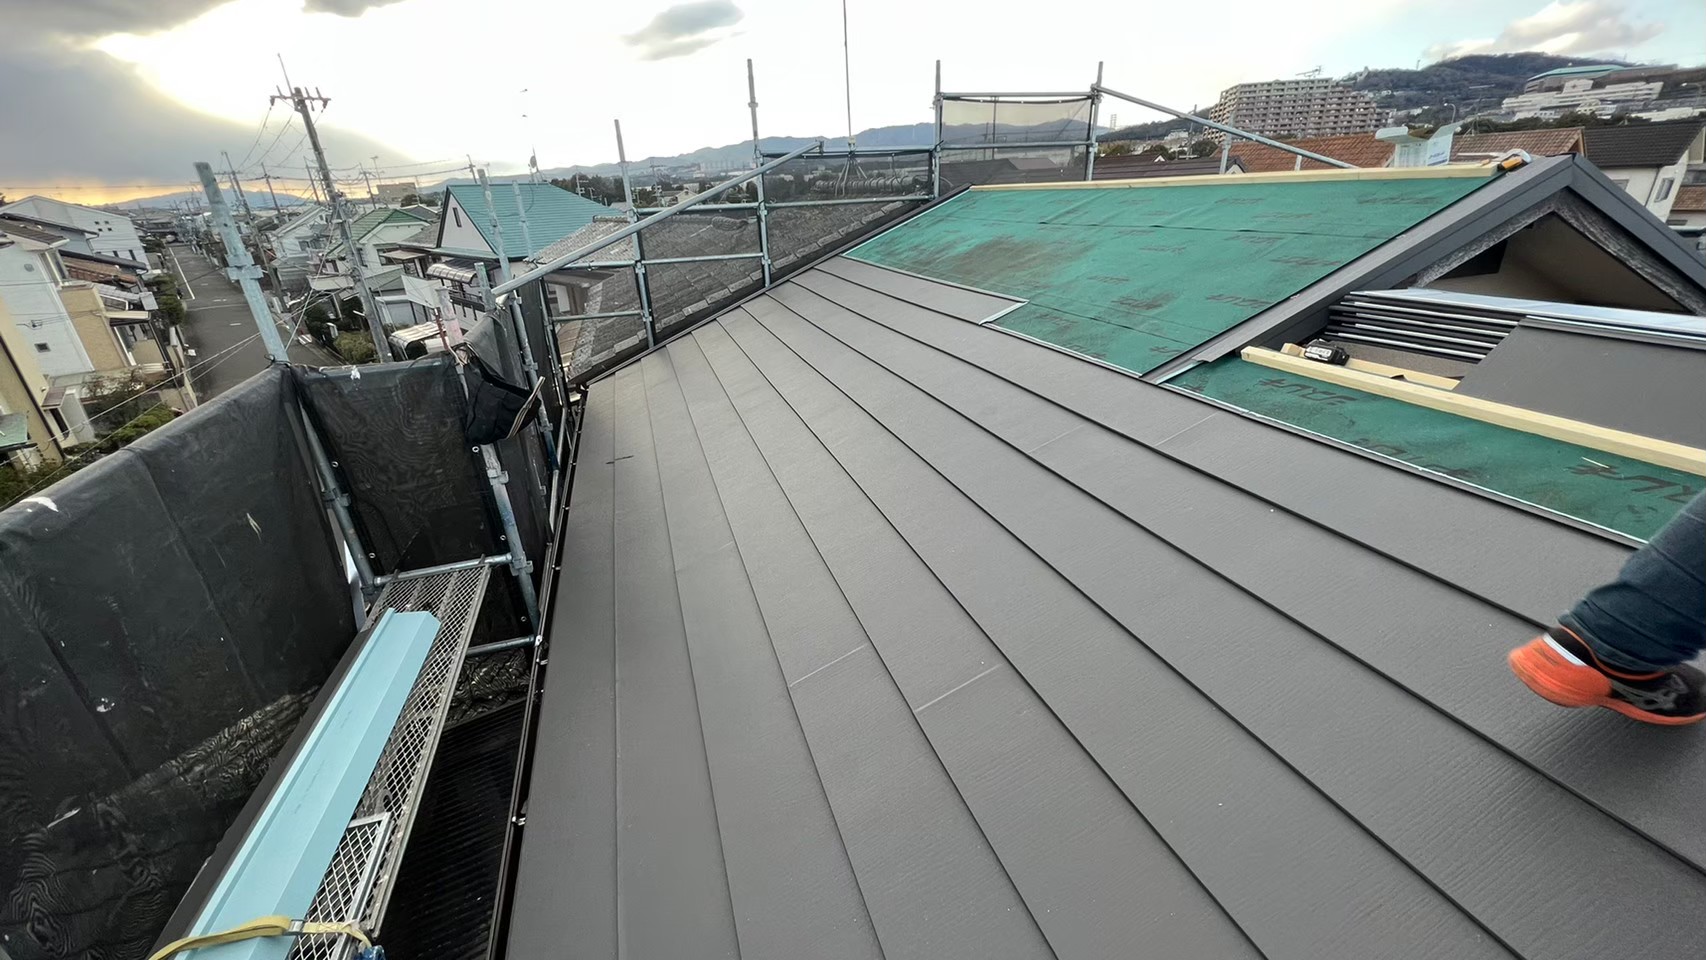 防水シート貼り完了後は新しい屋根材
アイジー工業スーパーガルテクトを取付していきます